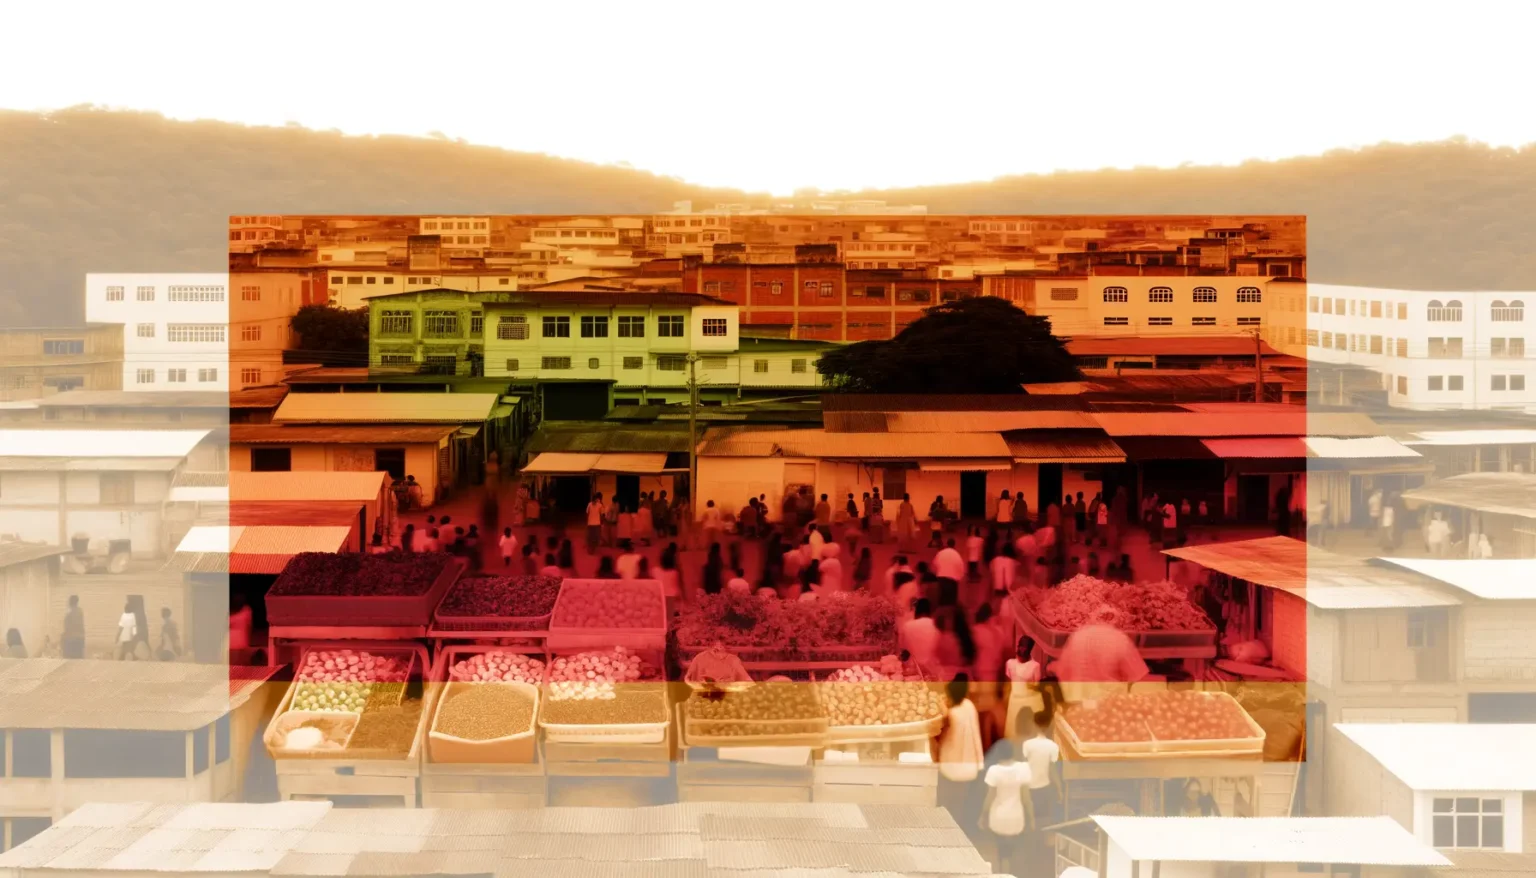 Ein Marktplatz mit verschiedenen Obst- und Gemüseständen voller Menschen, überlagert von einem Bild einer Stadt mit Gebäuden vor einem bewaldeten Hügel. Das Bild hat einen Farbverlauf von klar und farbenfroh im Vordergrund zu einem monochromen, orange getönten Hintergrund.